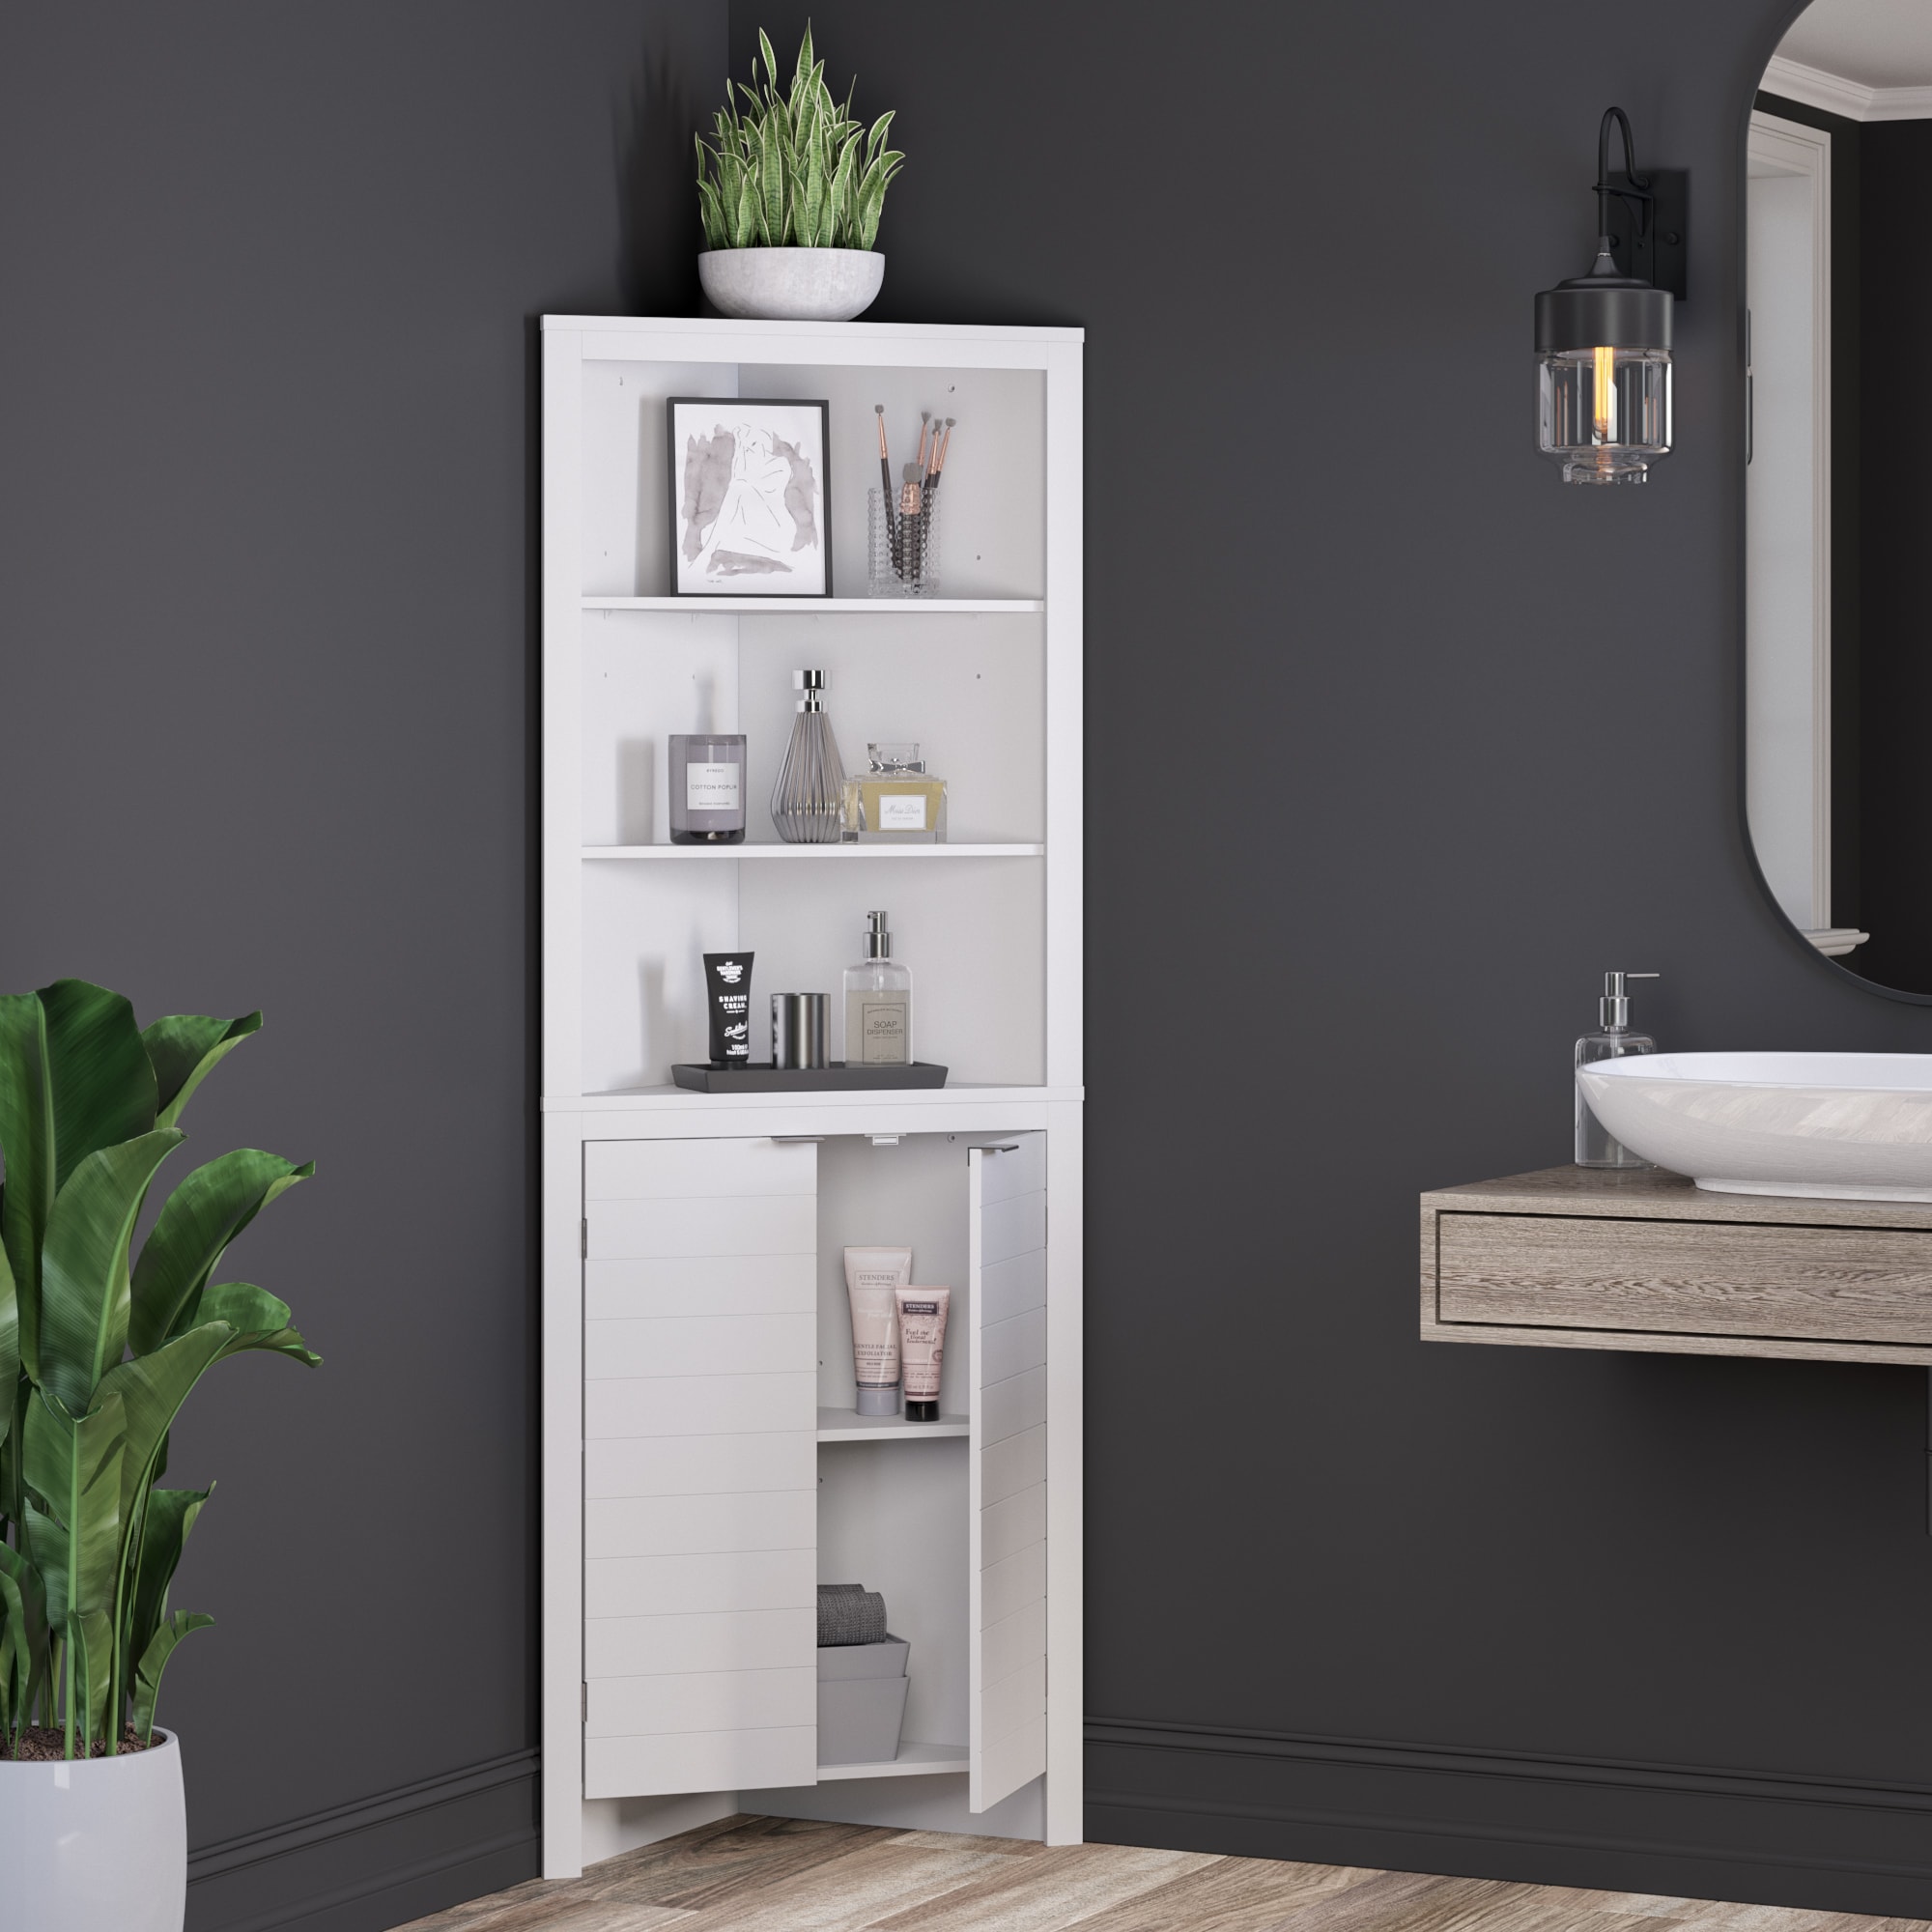 Home Office Bathroom Floor Cabinet, Free Standing Corner Cabinet